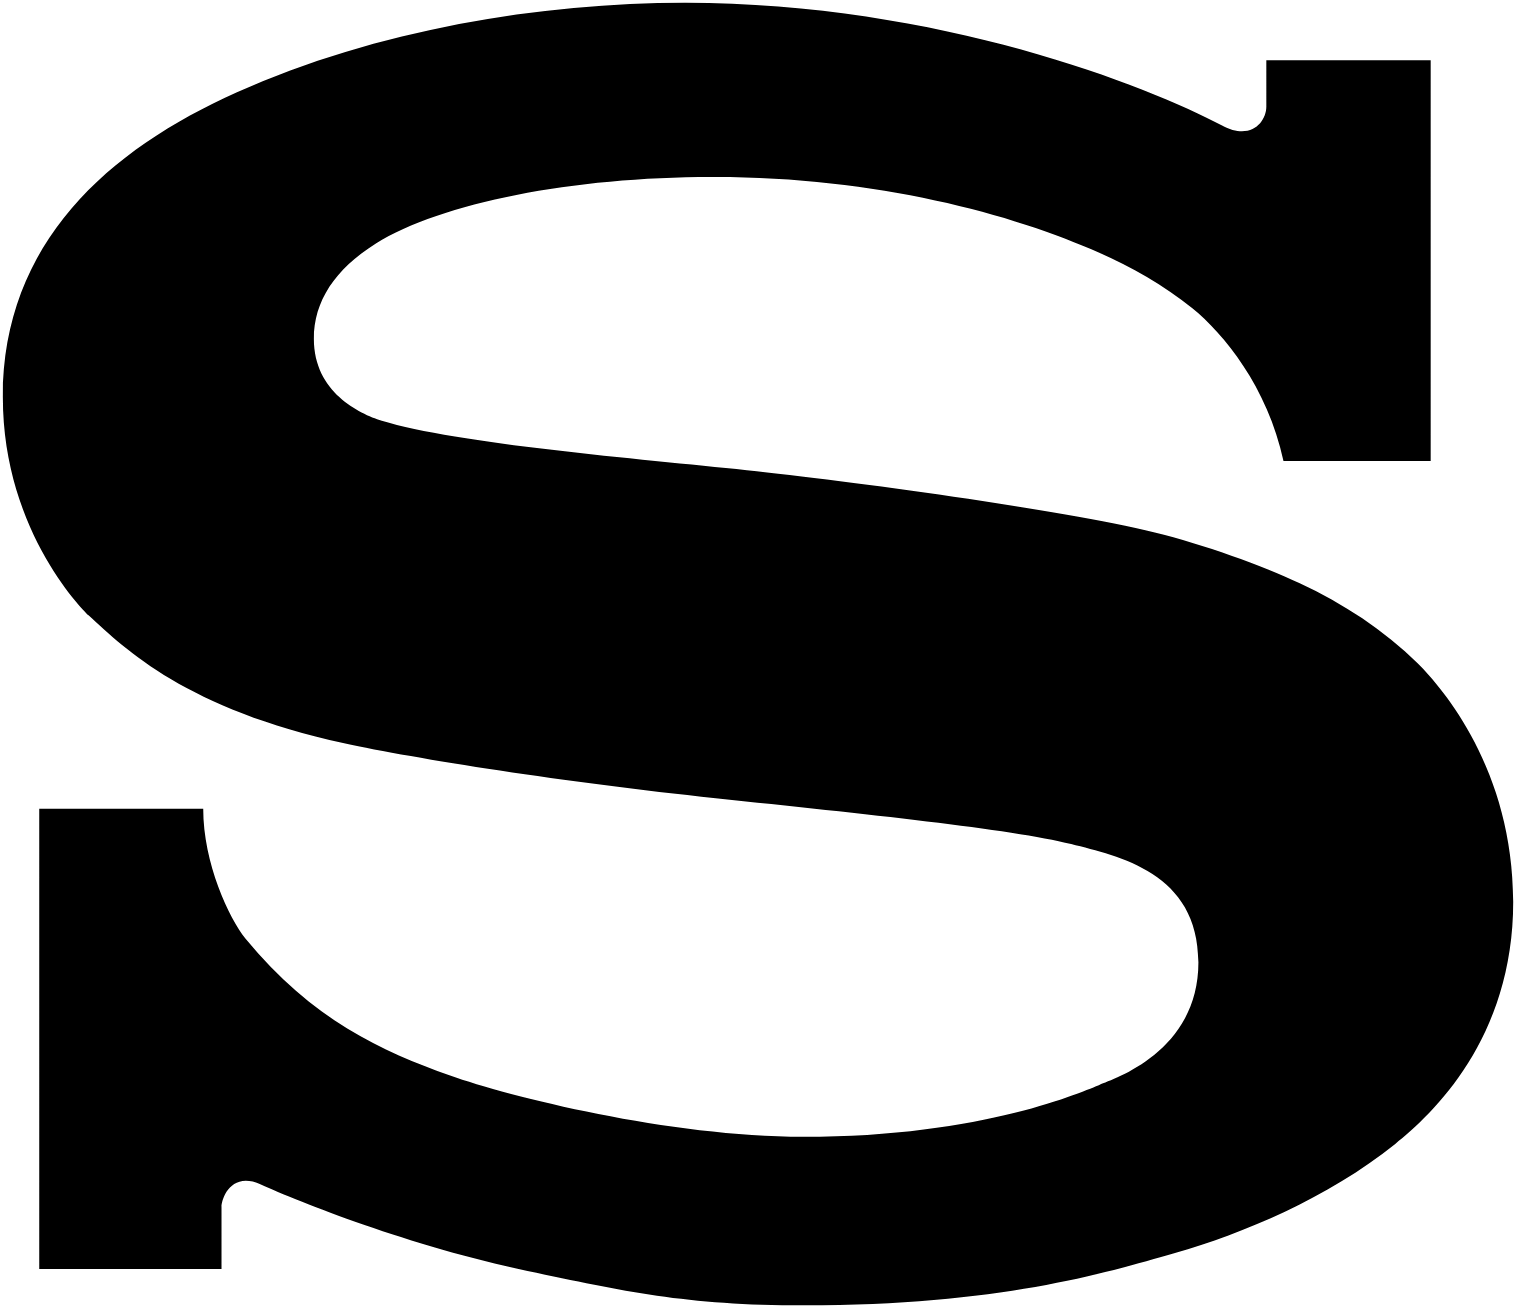 File:Sony logo.svg - Wikipedia